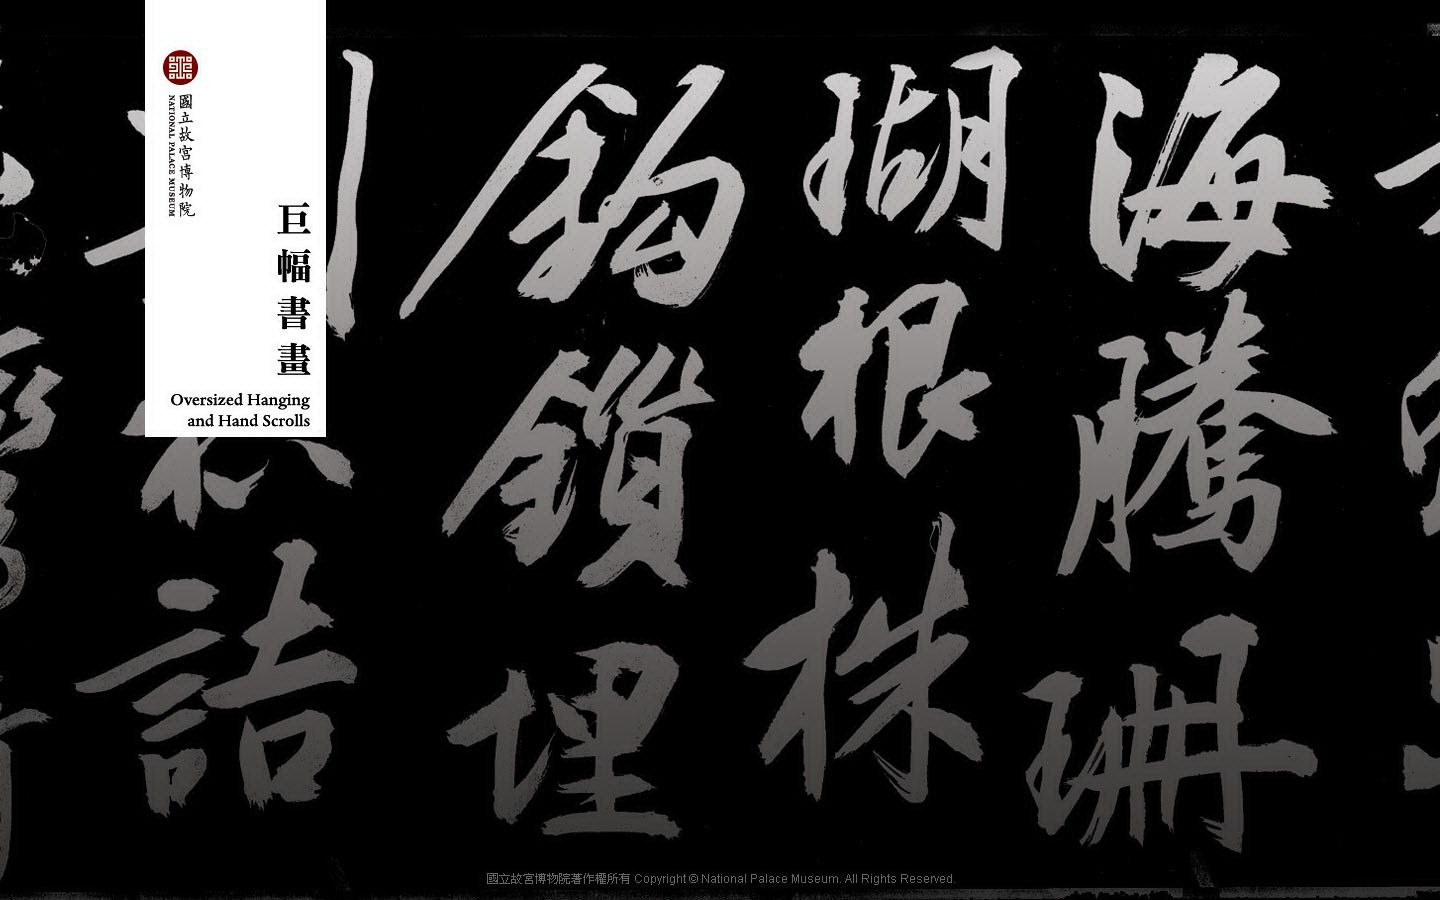 台北故宫博物院 文物展壁纸(二)14 - 1440x900